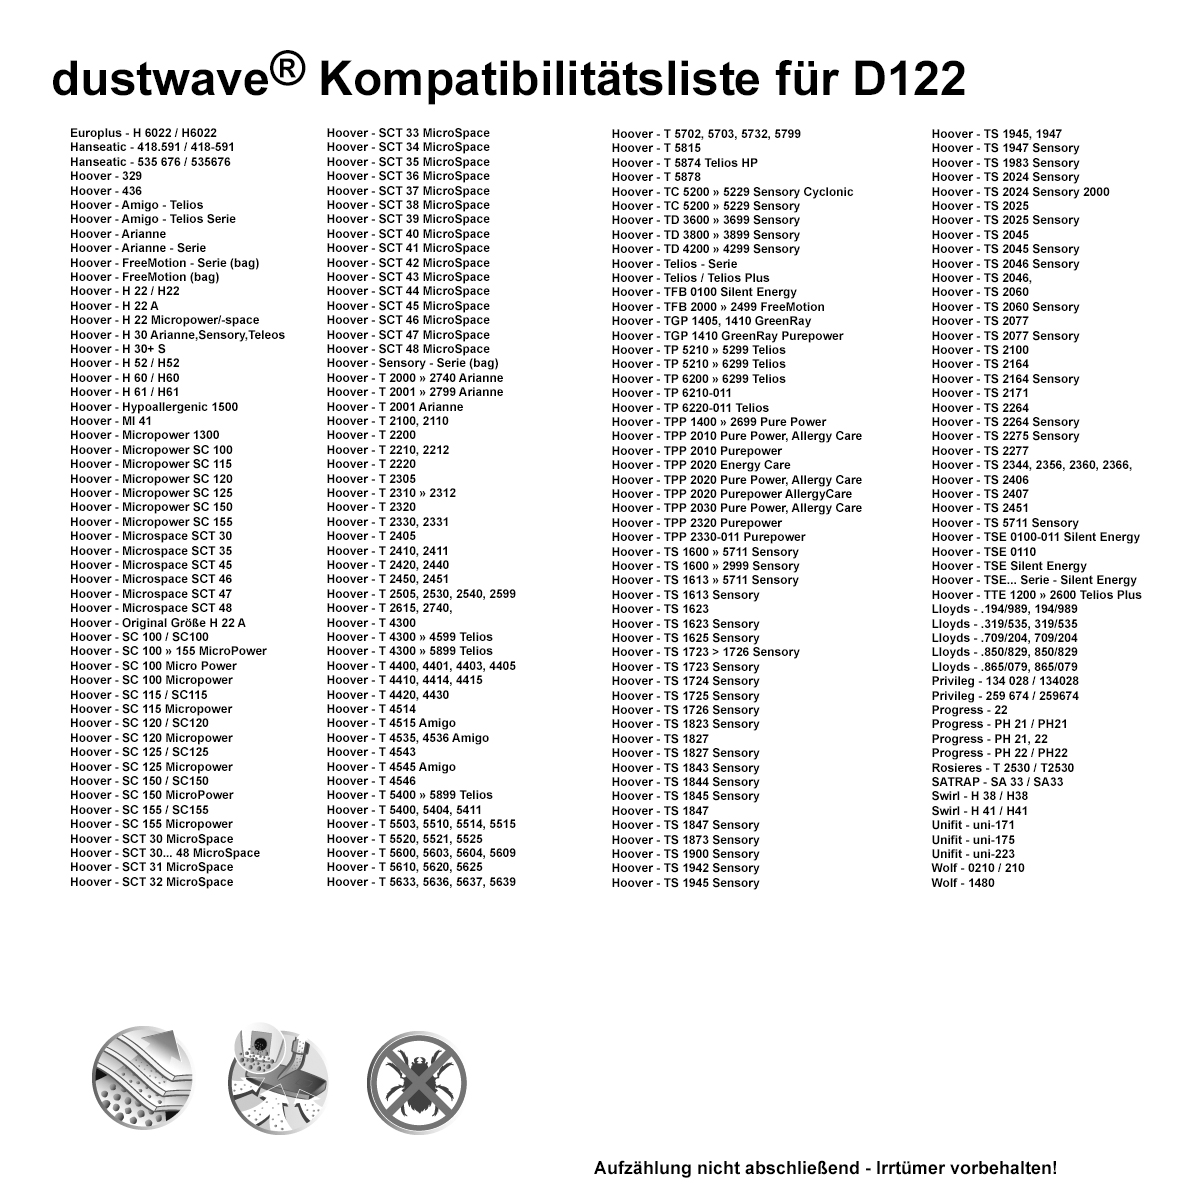 Dustwave® 20 Staubsaugerbeutel für Hoover AR40 / TRAR40 - hocheffizient, mehrlagiges Mikrovlies mit Hygieneverschluss - Made in Germany